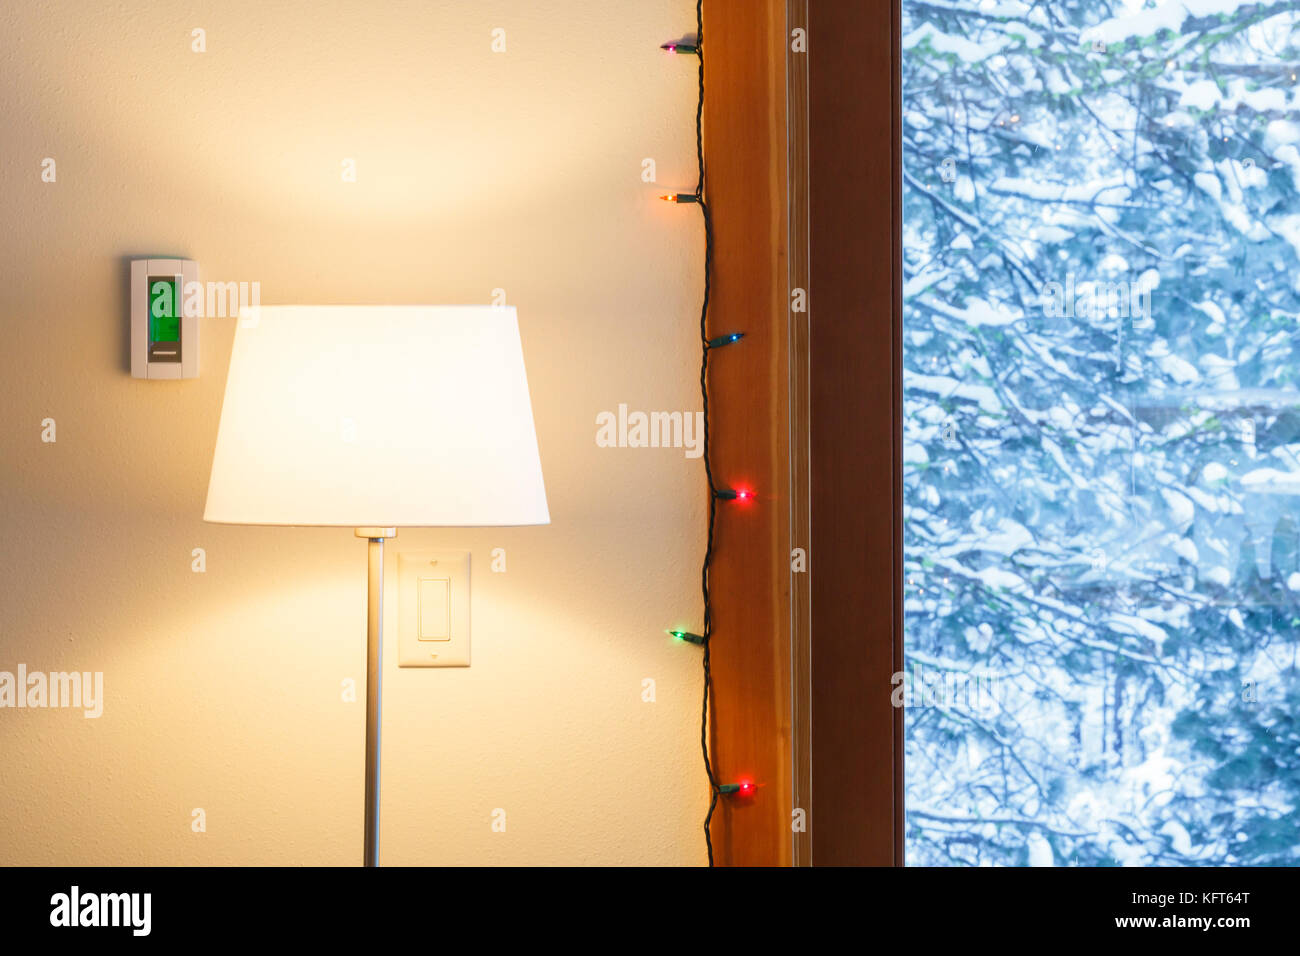 Accueil chaleureux salon intérieur avec thermostat électronique numérique, lampadaire, lumières de Noël et voir à travers les fenêtres de paysage de neige Banque D'Images